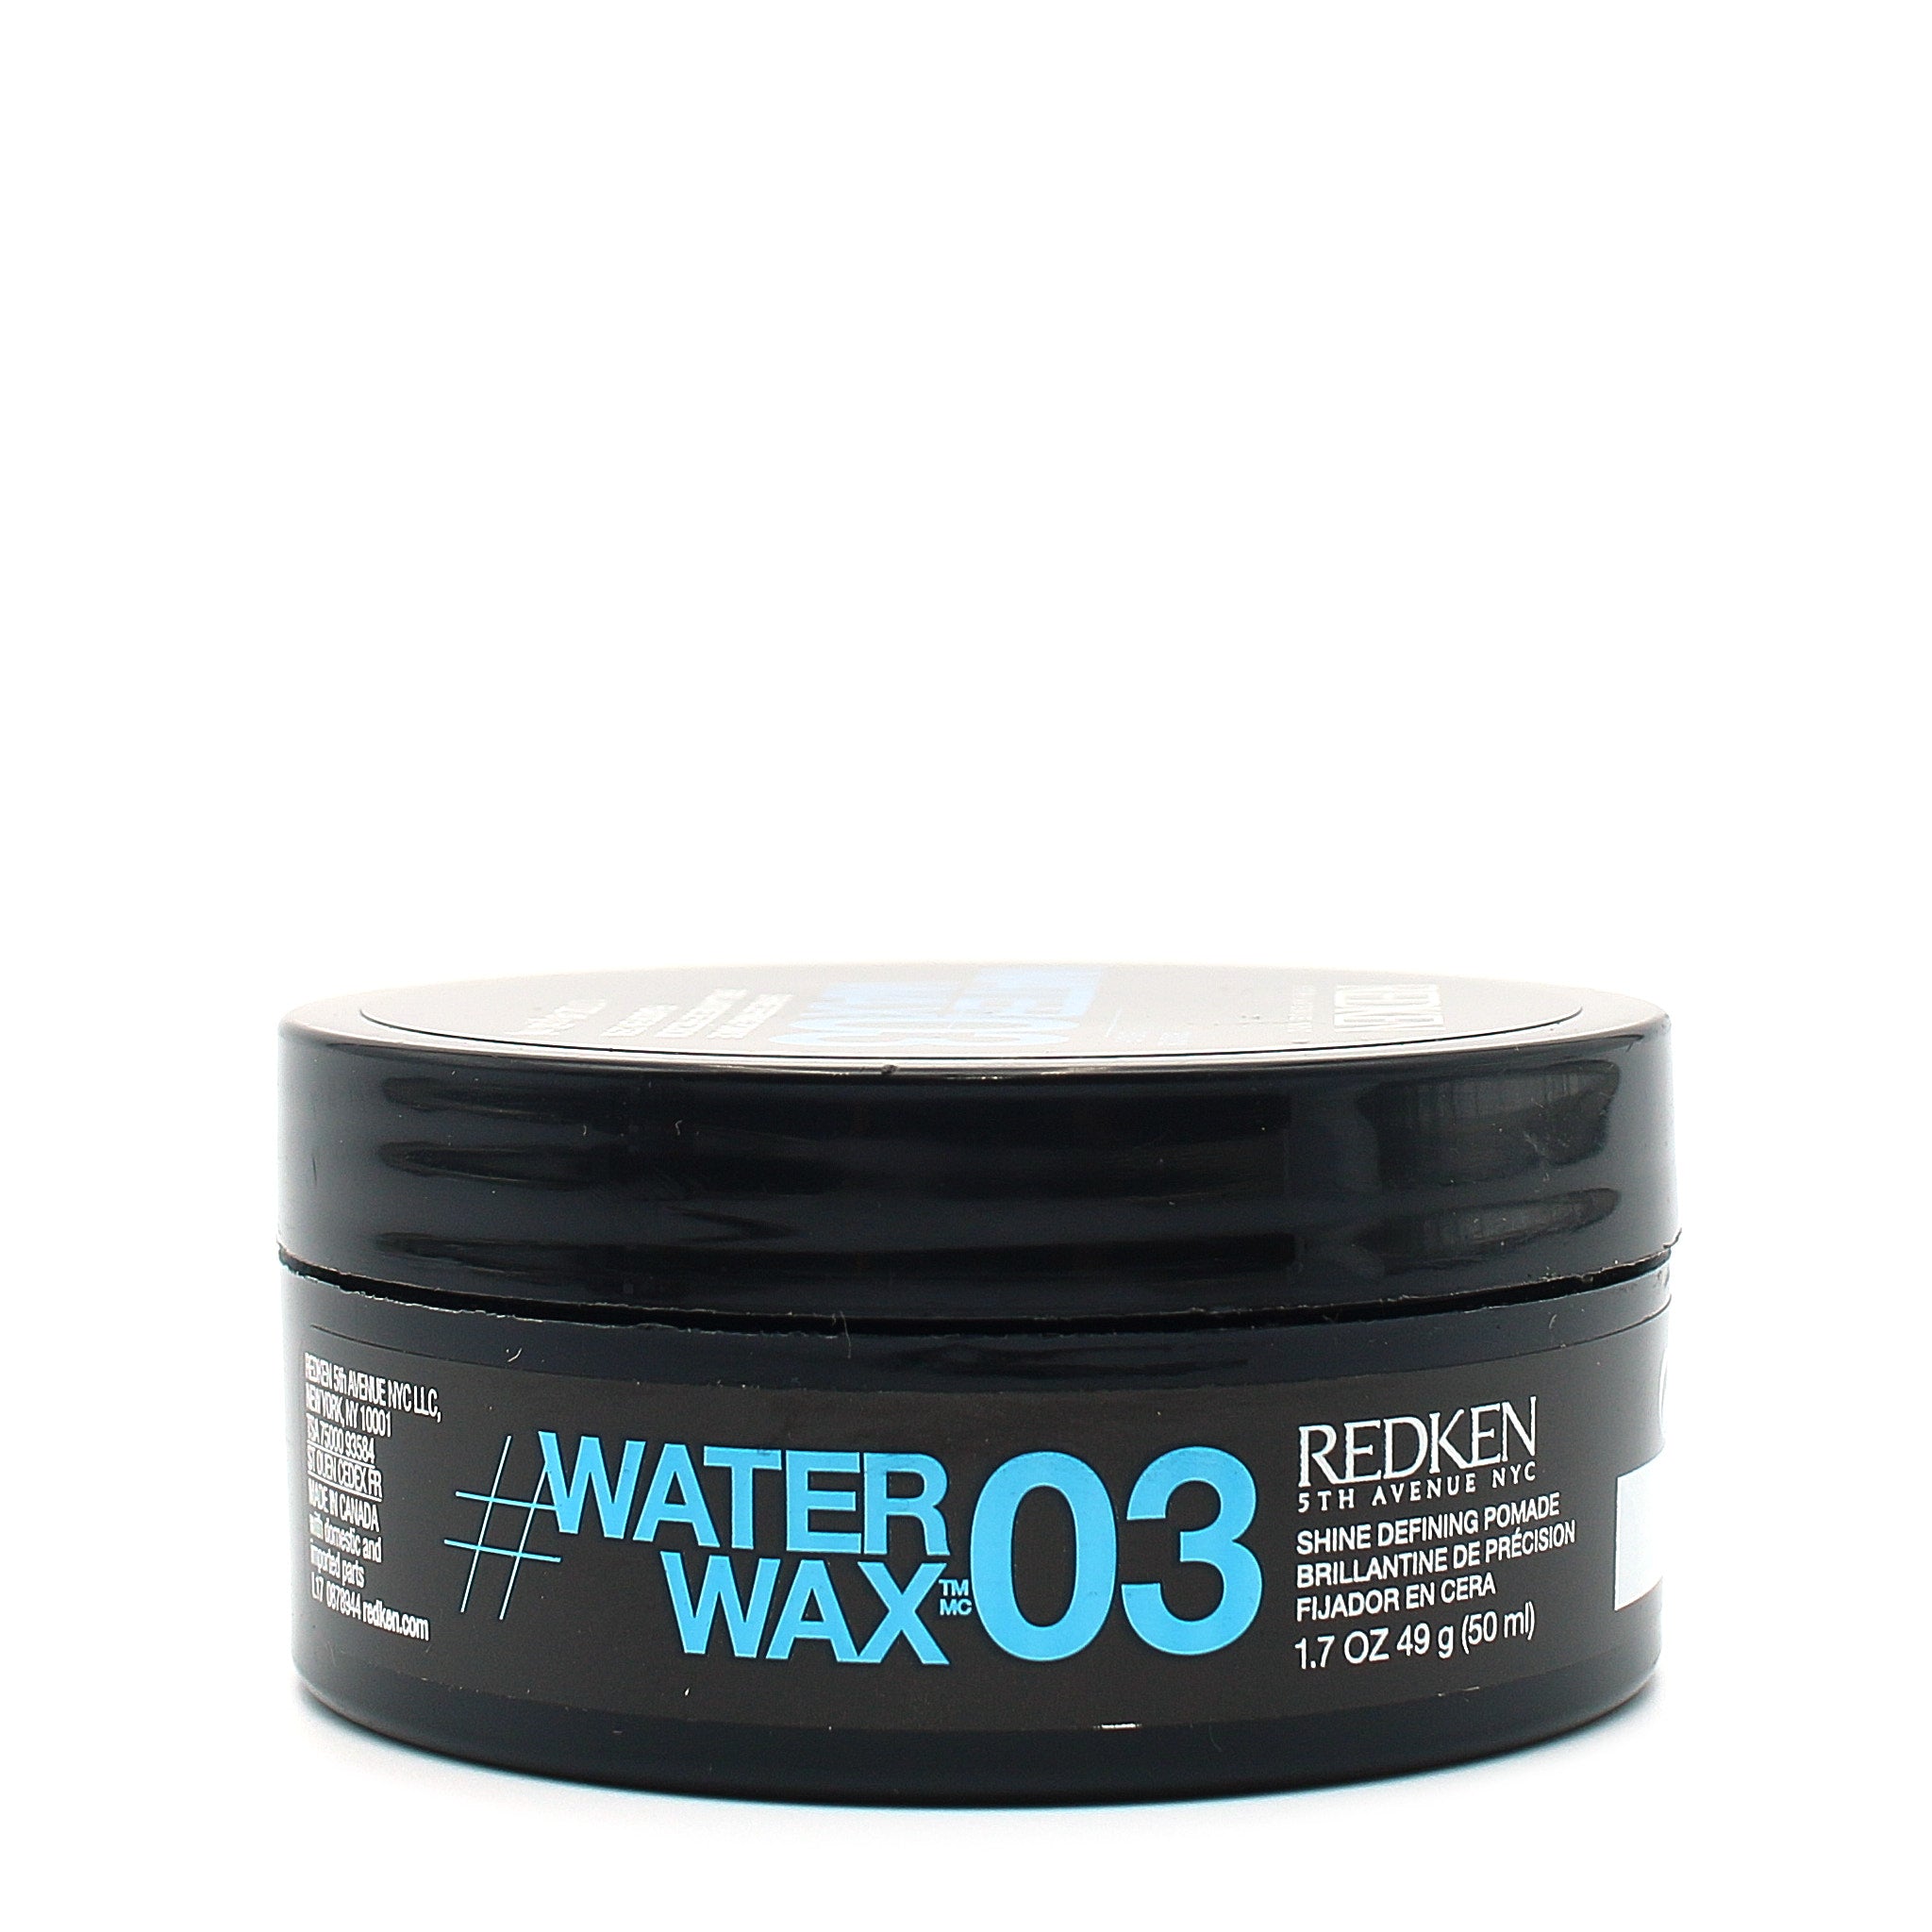 REDKEN Water WAX 03 Shine Defining Pomade 1.7 oz